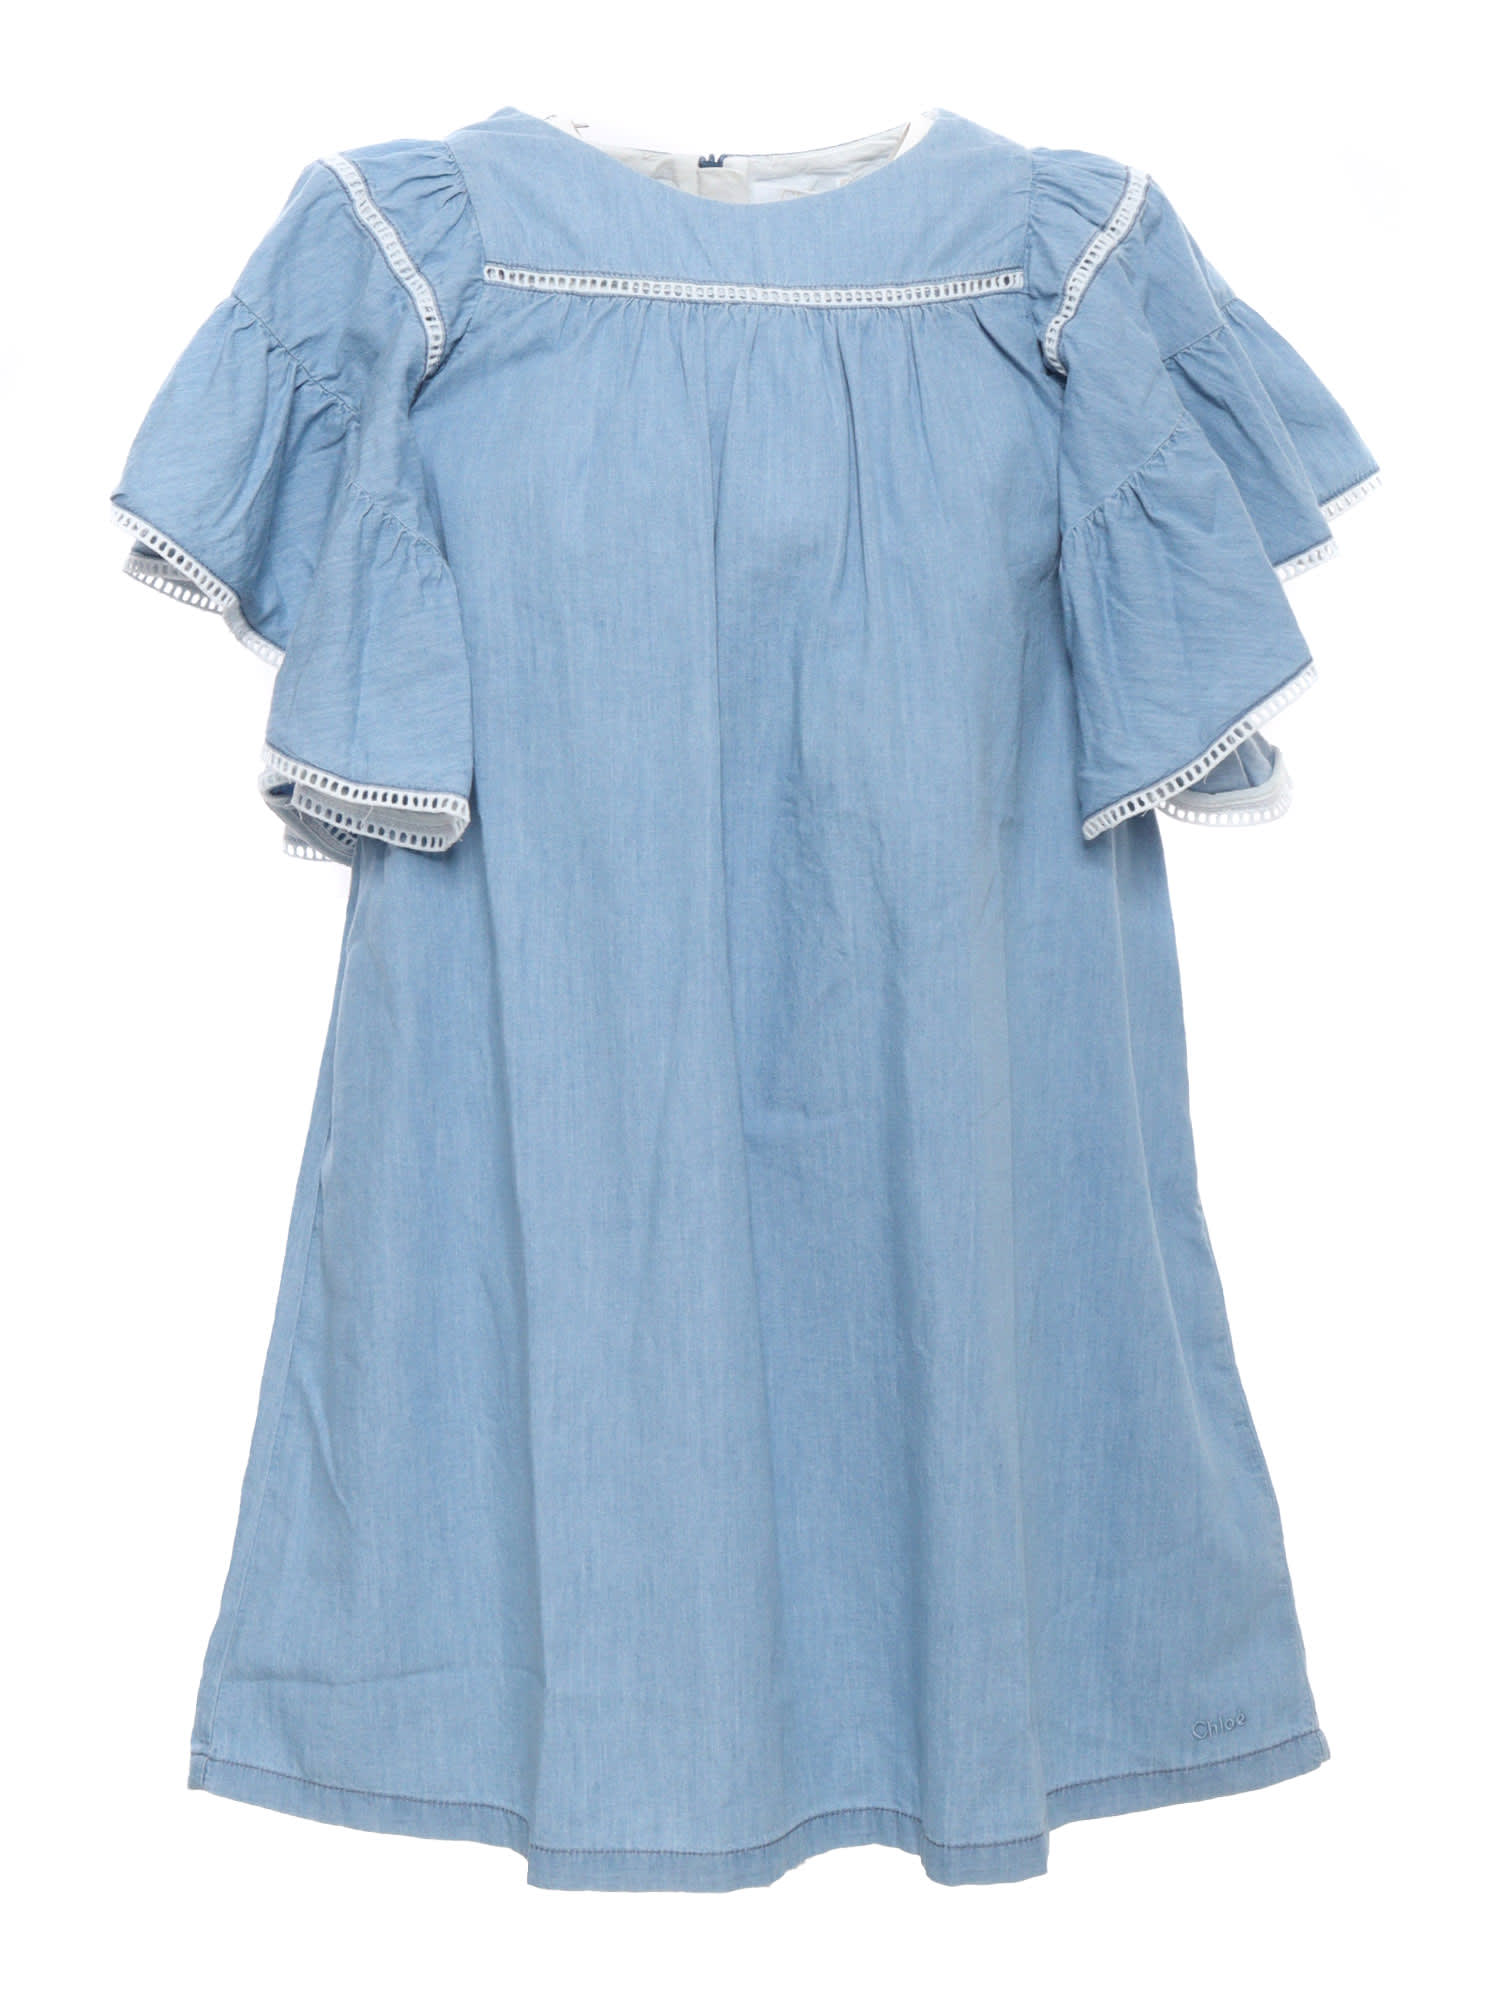 Chloé Kids' Light Blue Dress